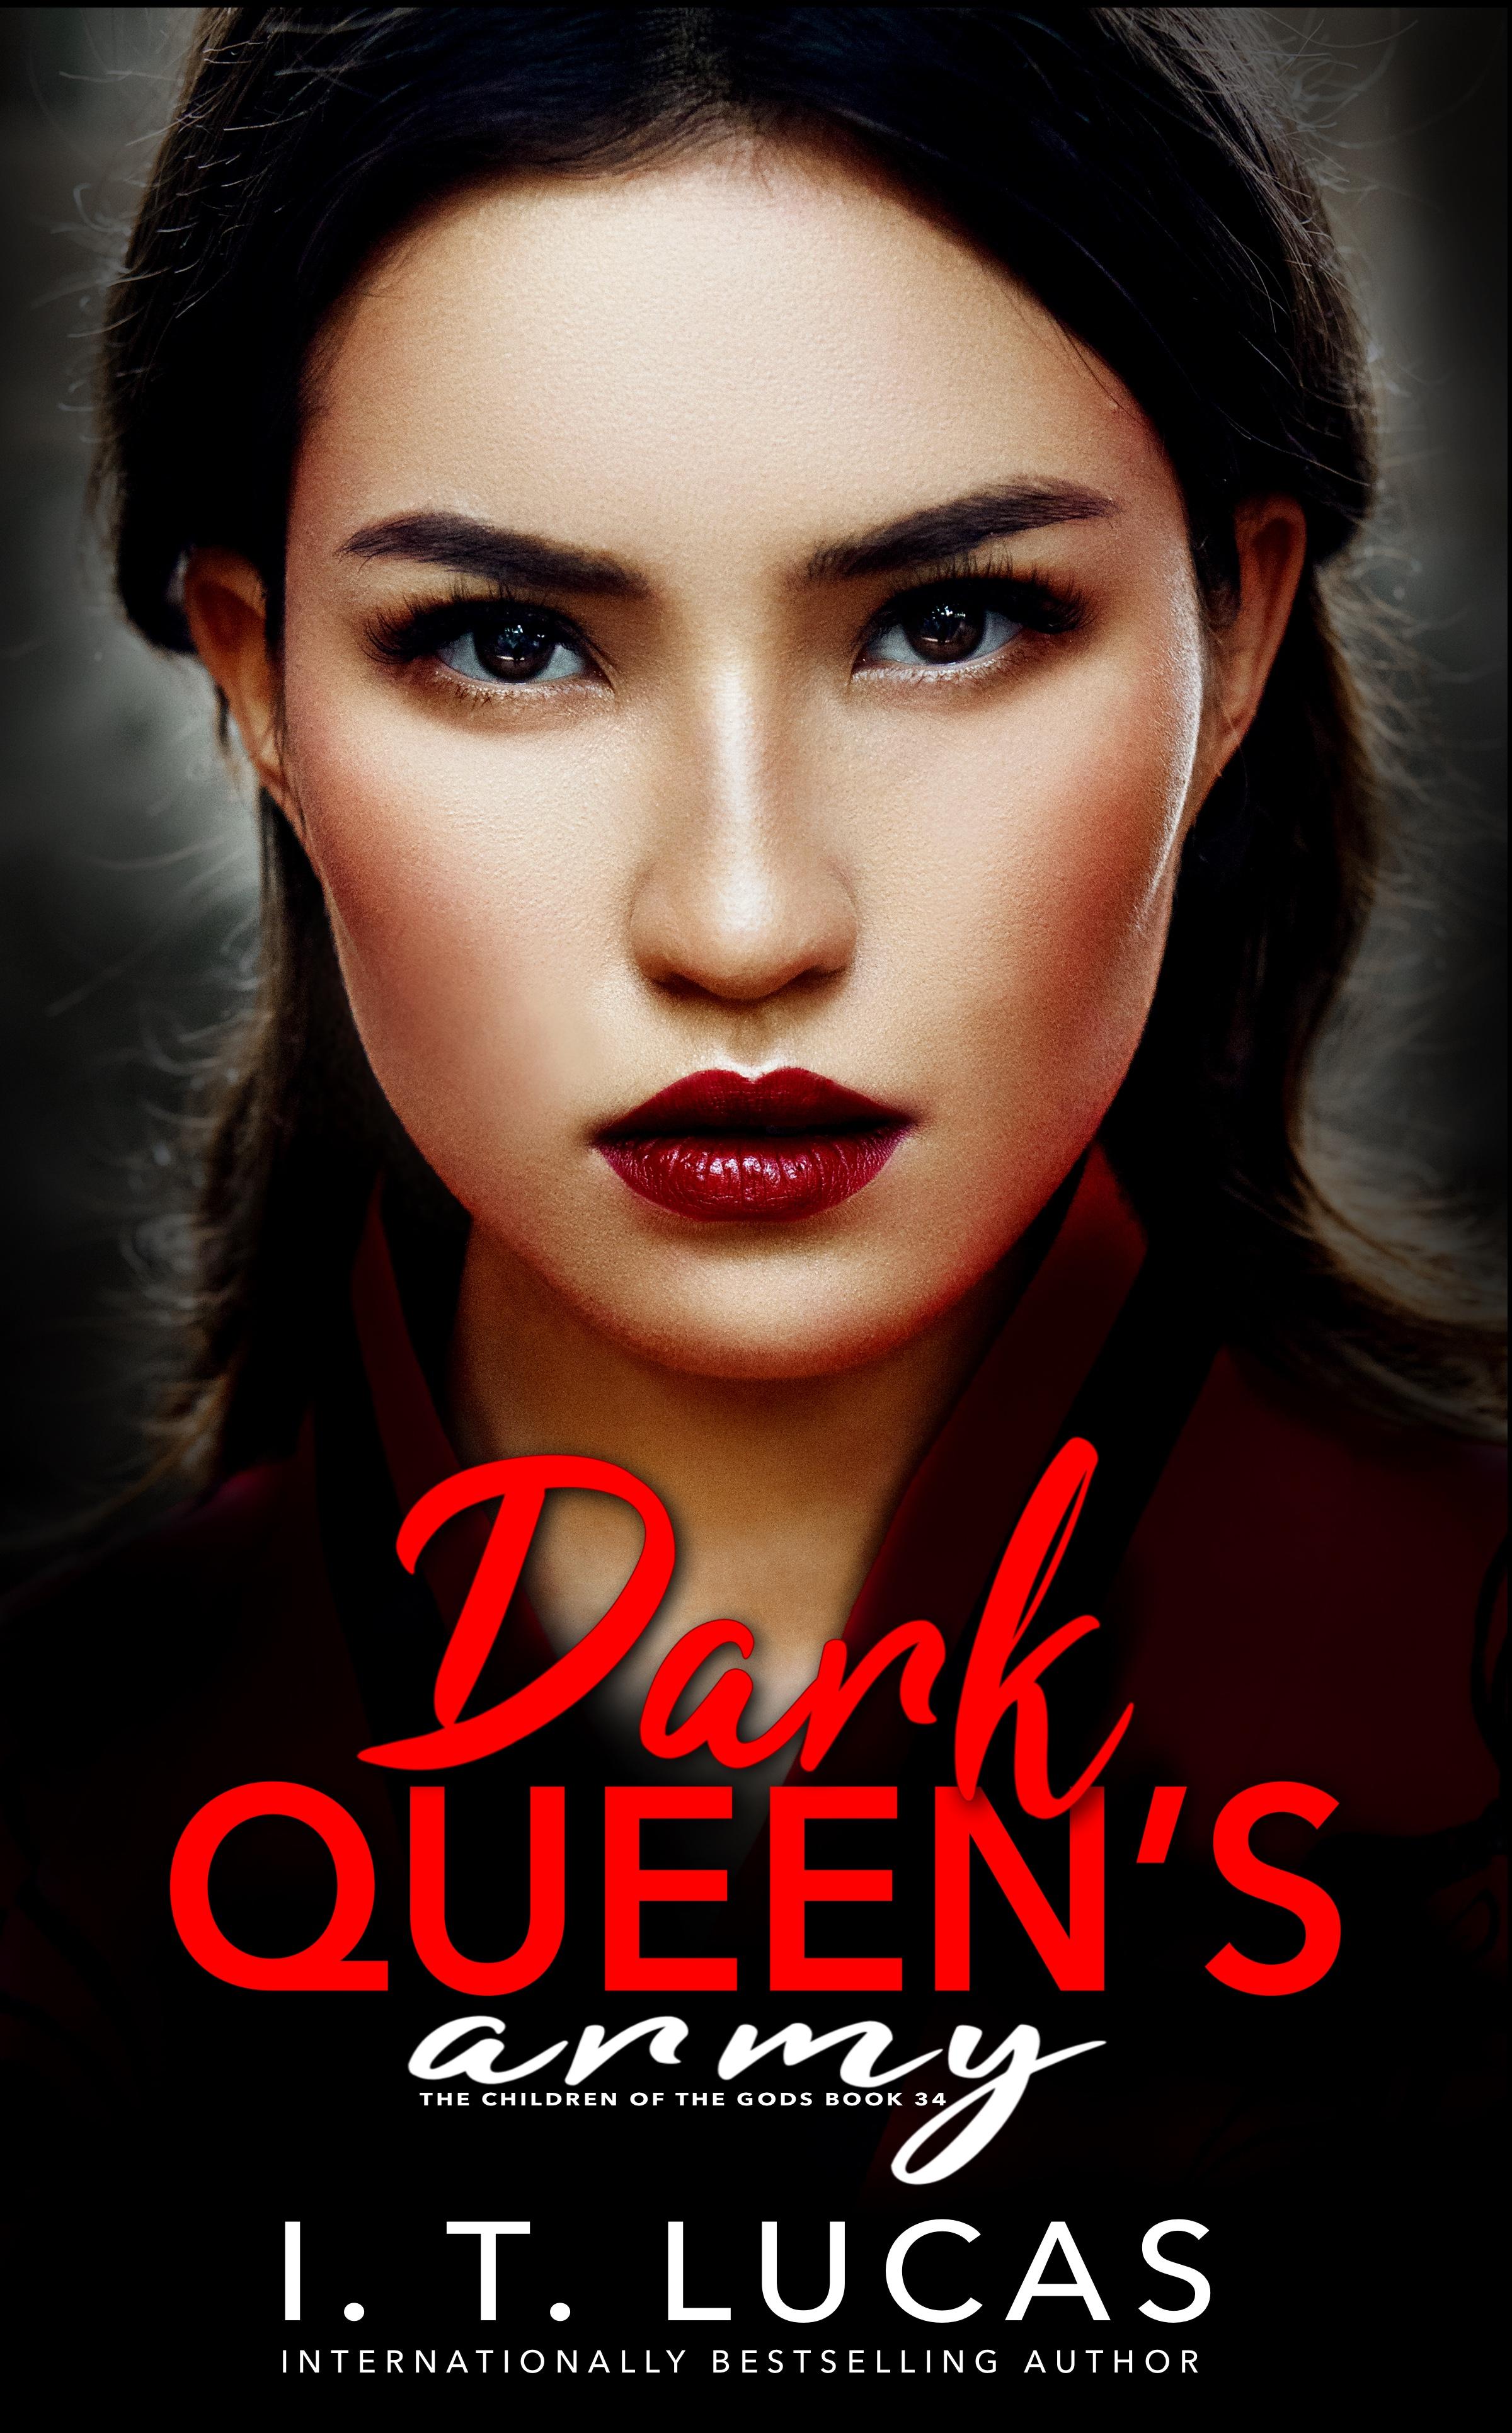 Dark Queen’s Army